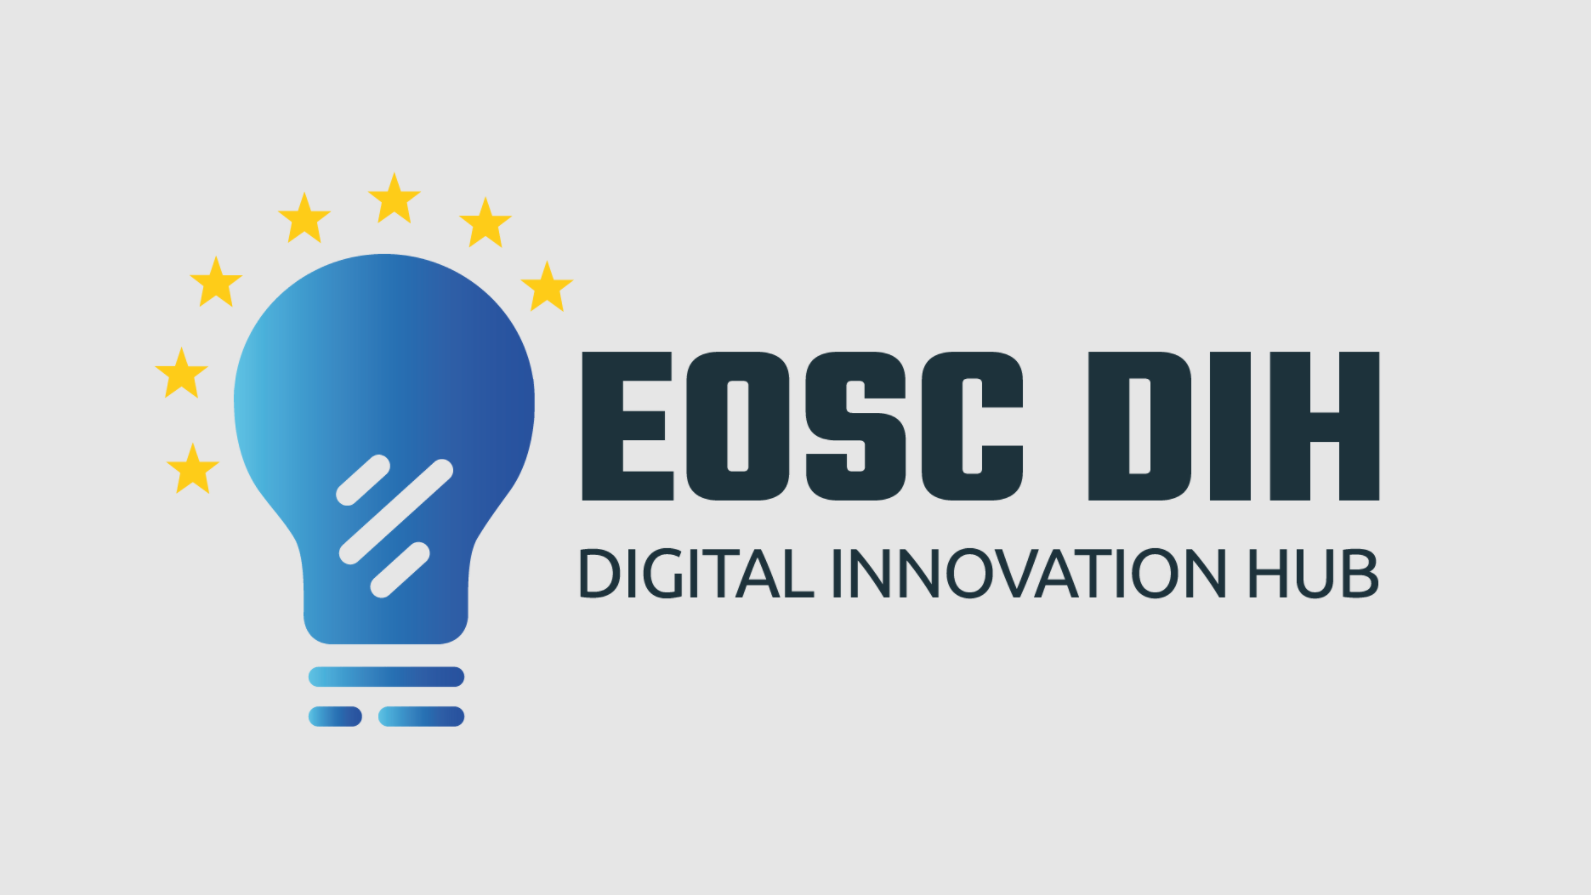 EOSC DIH: podpisano porozumienie o współpracy